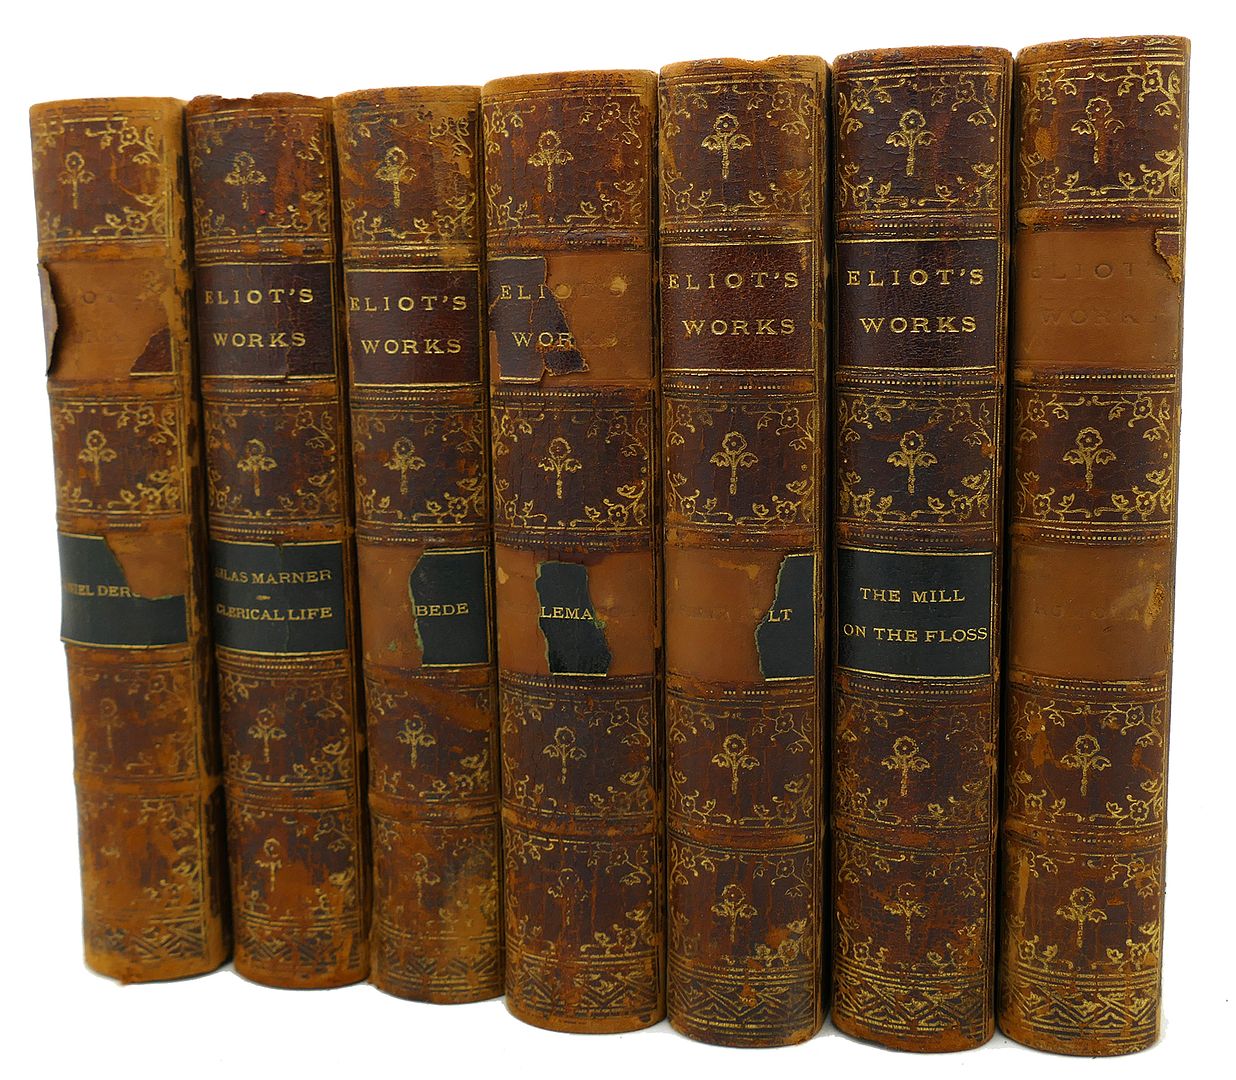 GEORGE ELIOT - George Eliot's Works 7 Volumes